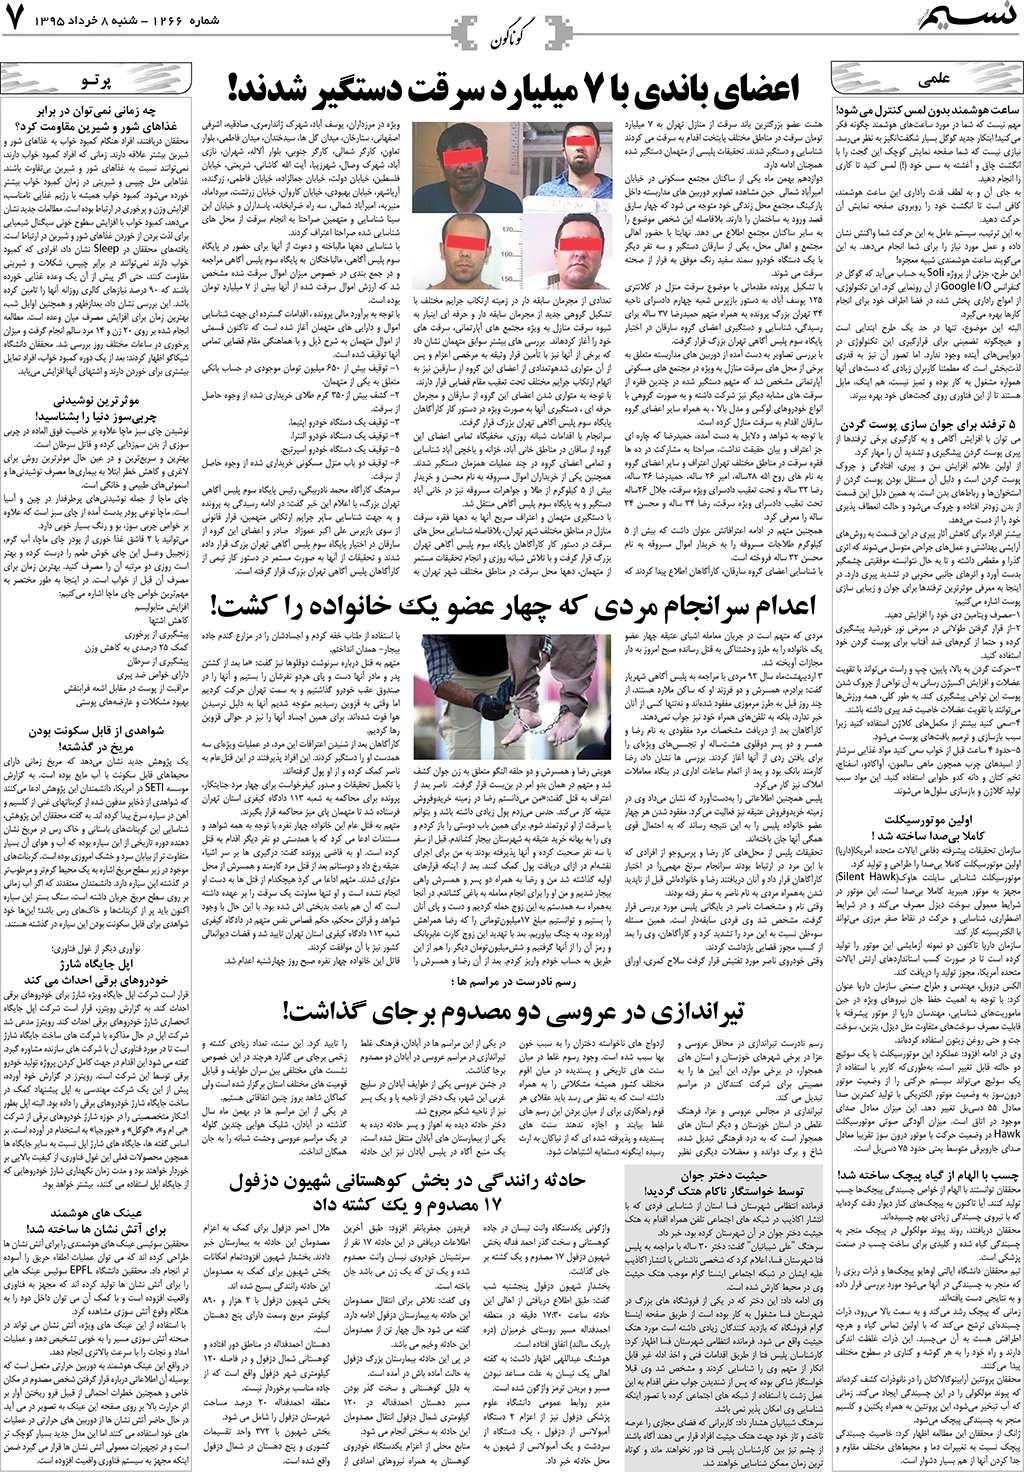 صفحه گوناگون روزنامه نسیم شماره 1266